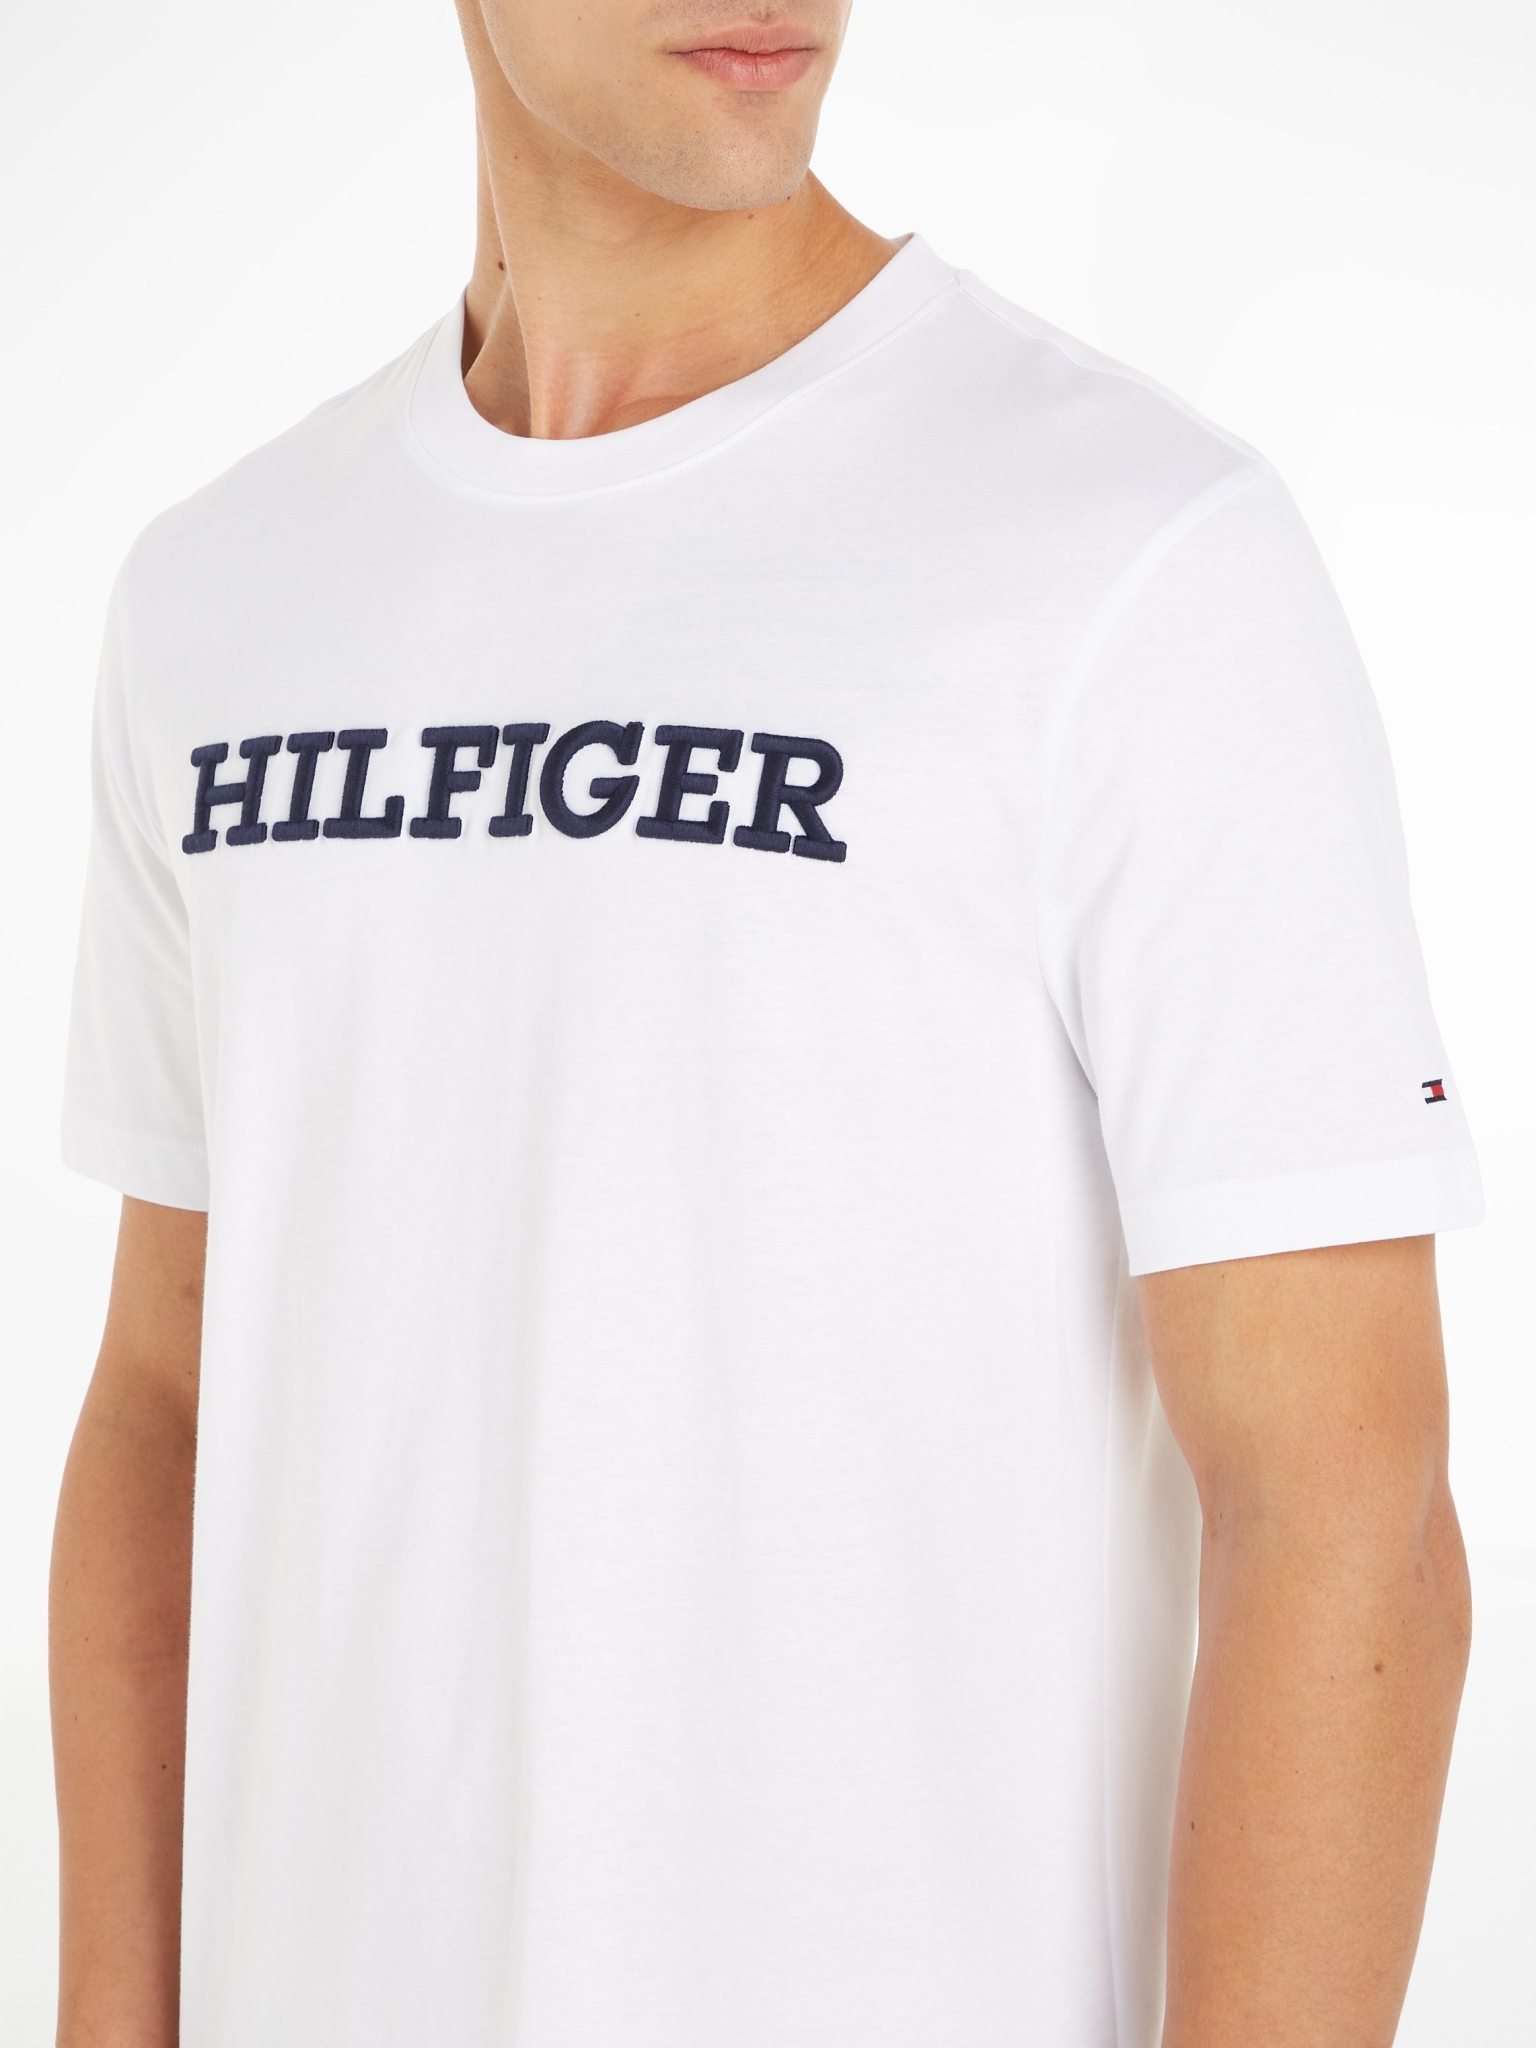 TOMMY HILFIGER Archive Fit T-Shirt mit Hilfiger-Monotype-Logo kaufen WÖHRL | 10704357